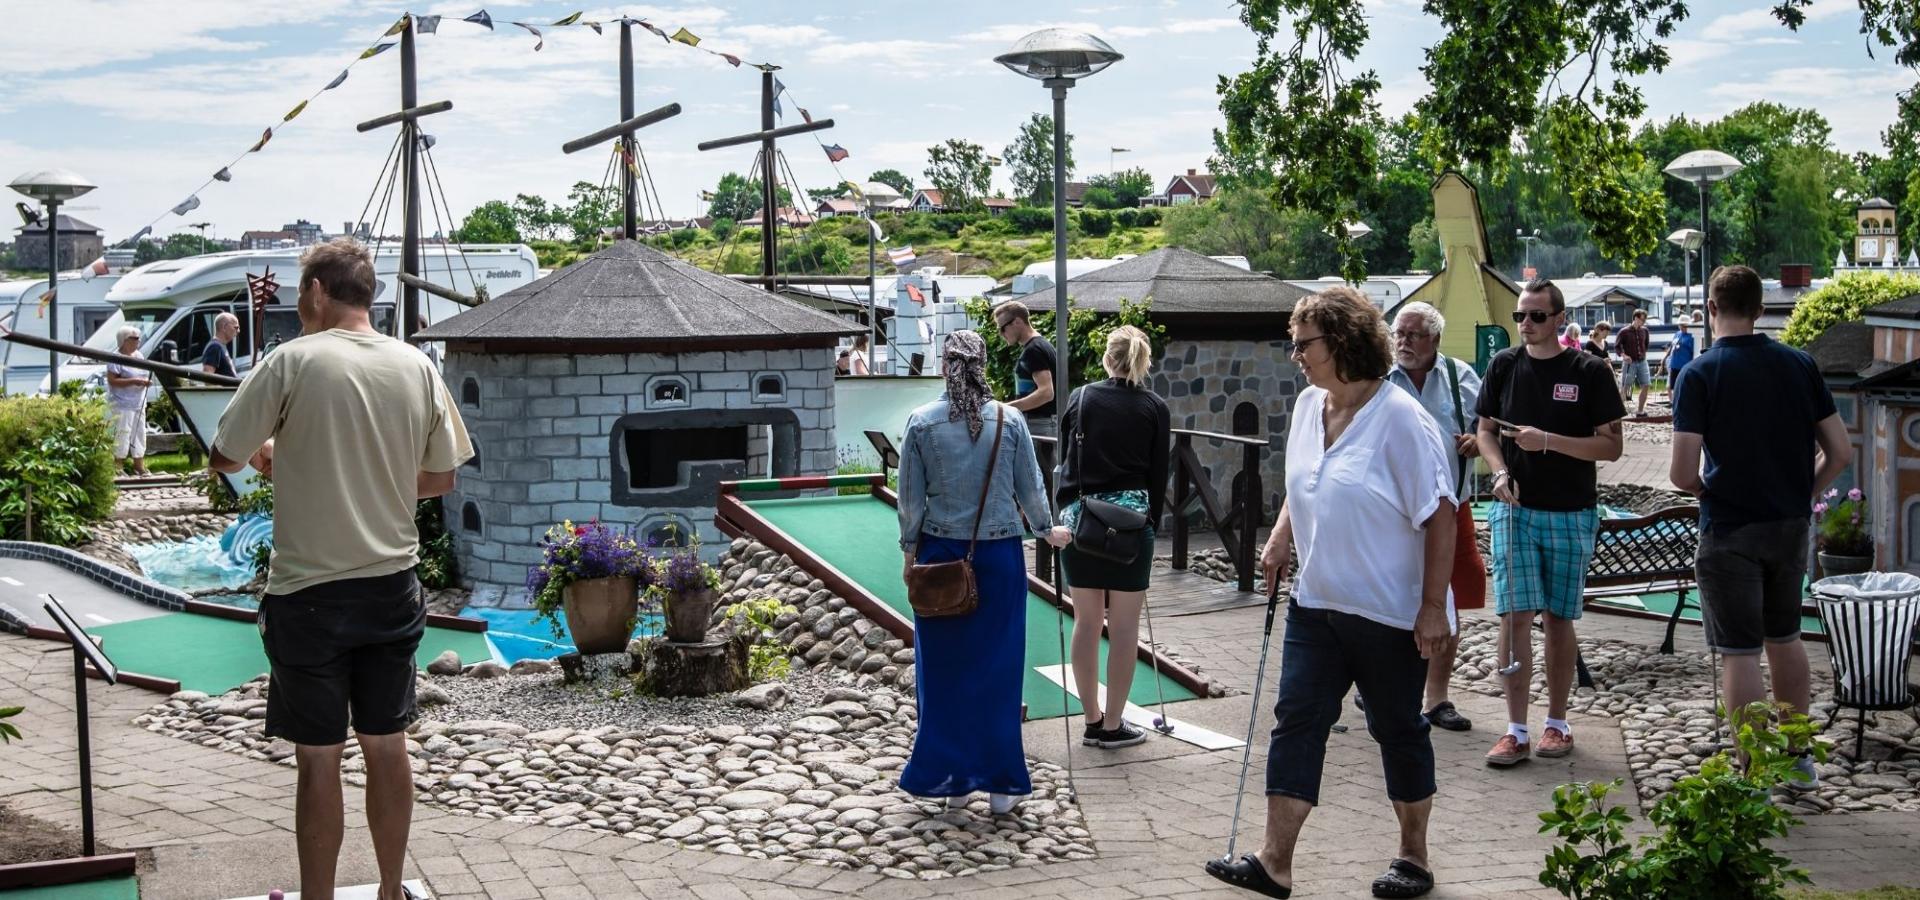 Minigolfbanan med golfhål som kopia av världsarvsstaden Karlskronas byggnader på Dragsö camping i Karlskrona, Blekinge.